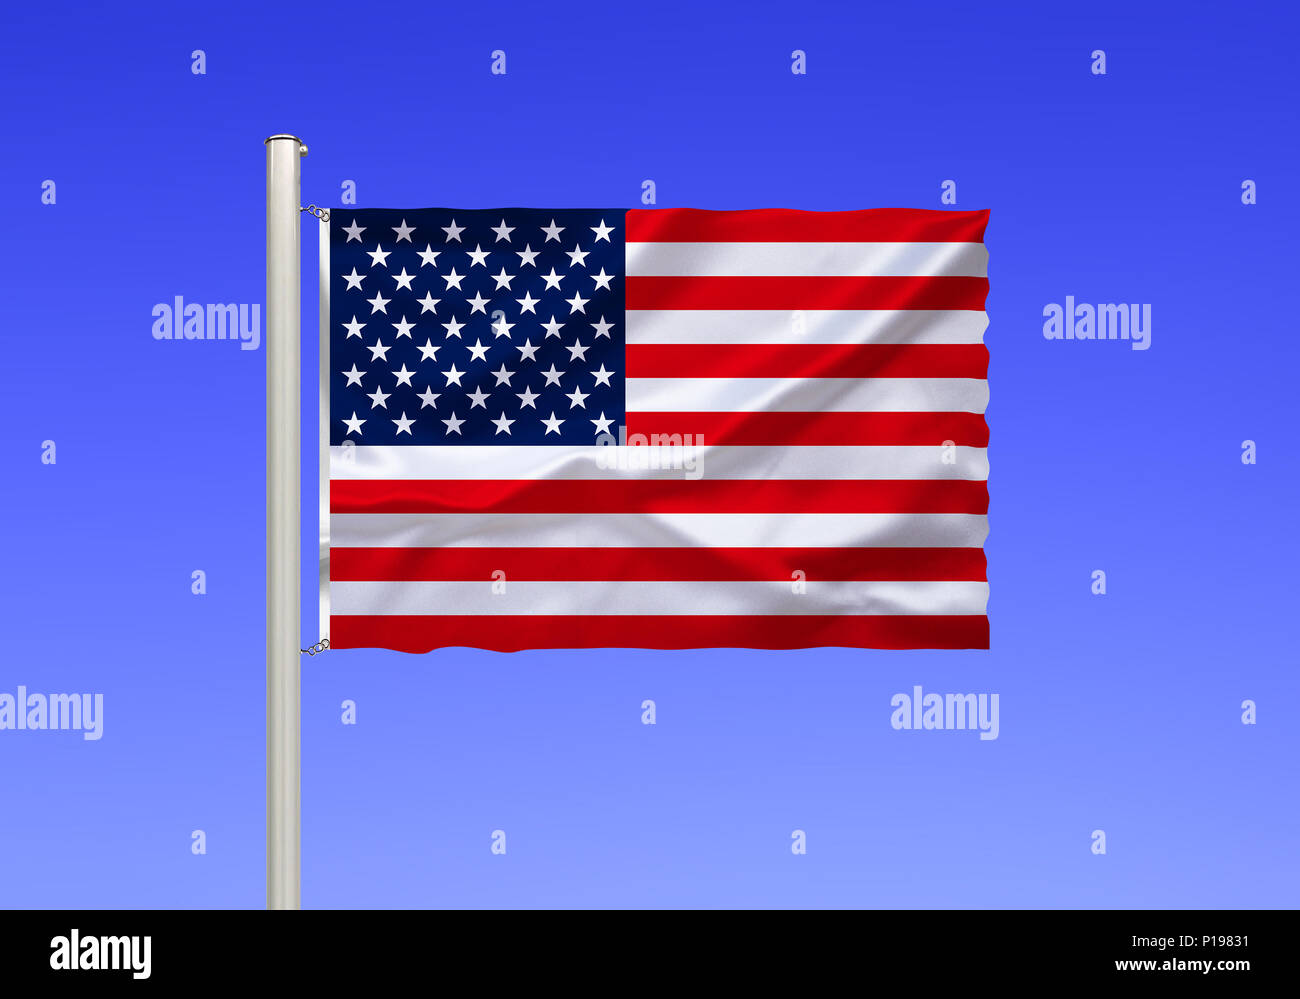 Bandera de los Estados Unidos de América, Estados Unidos, Flagge von Vereinigte Staaten von Amerika, EE.UU. Foto de stock